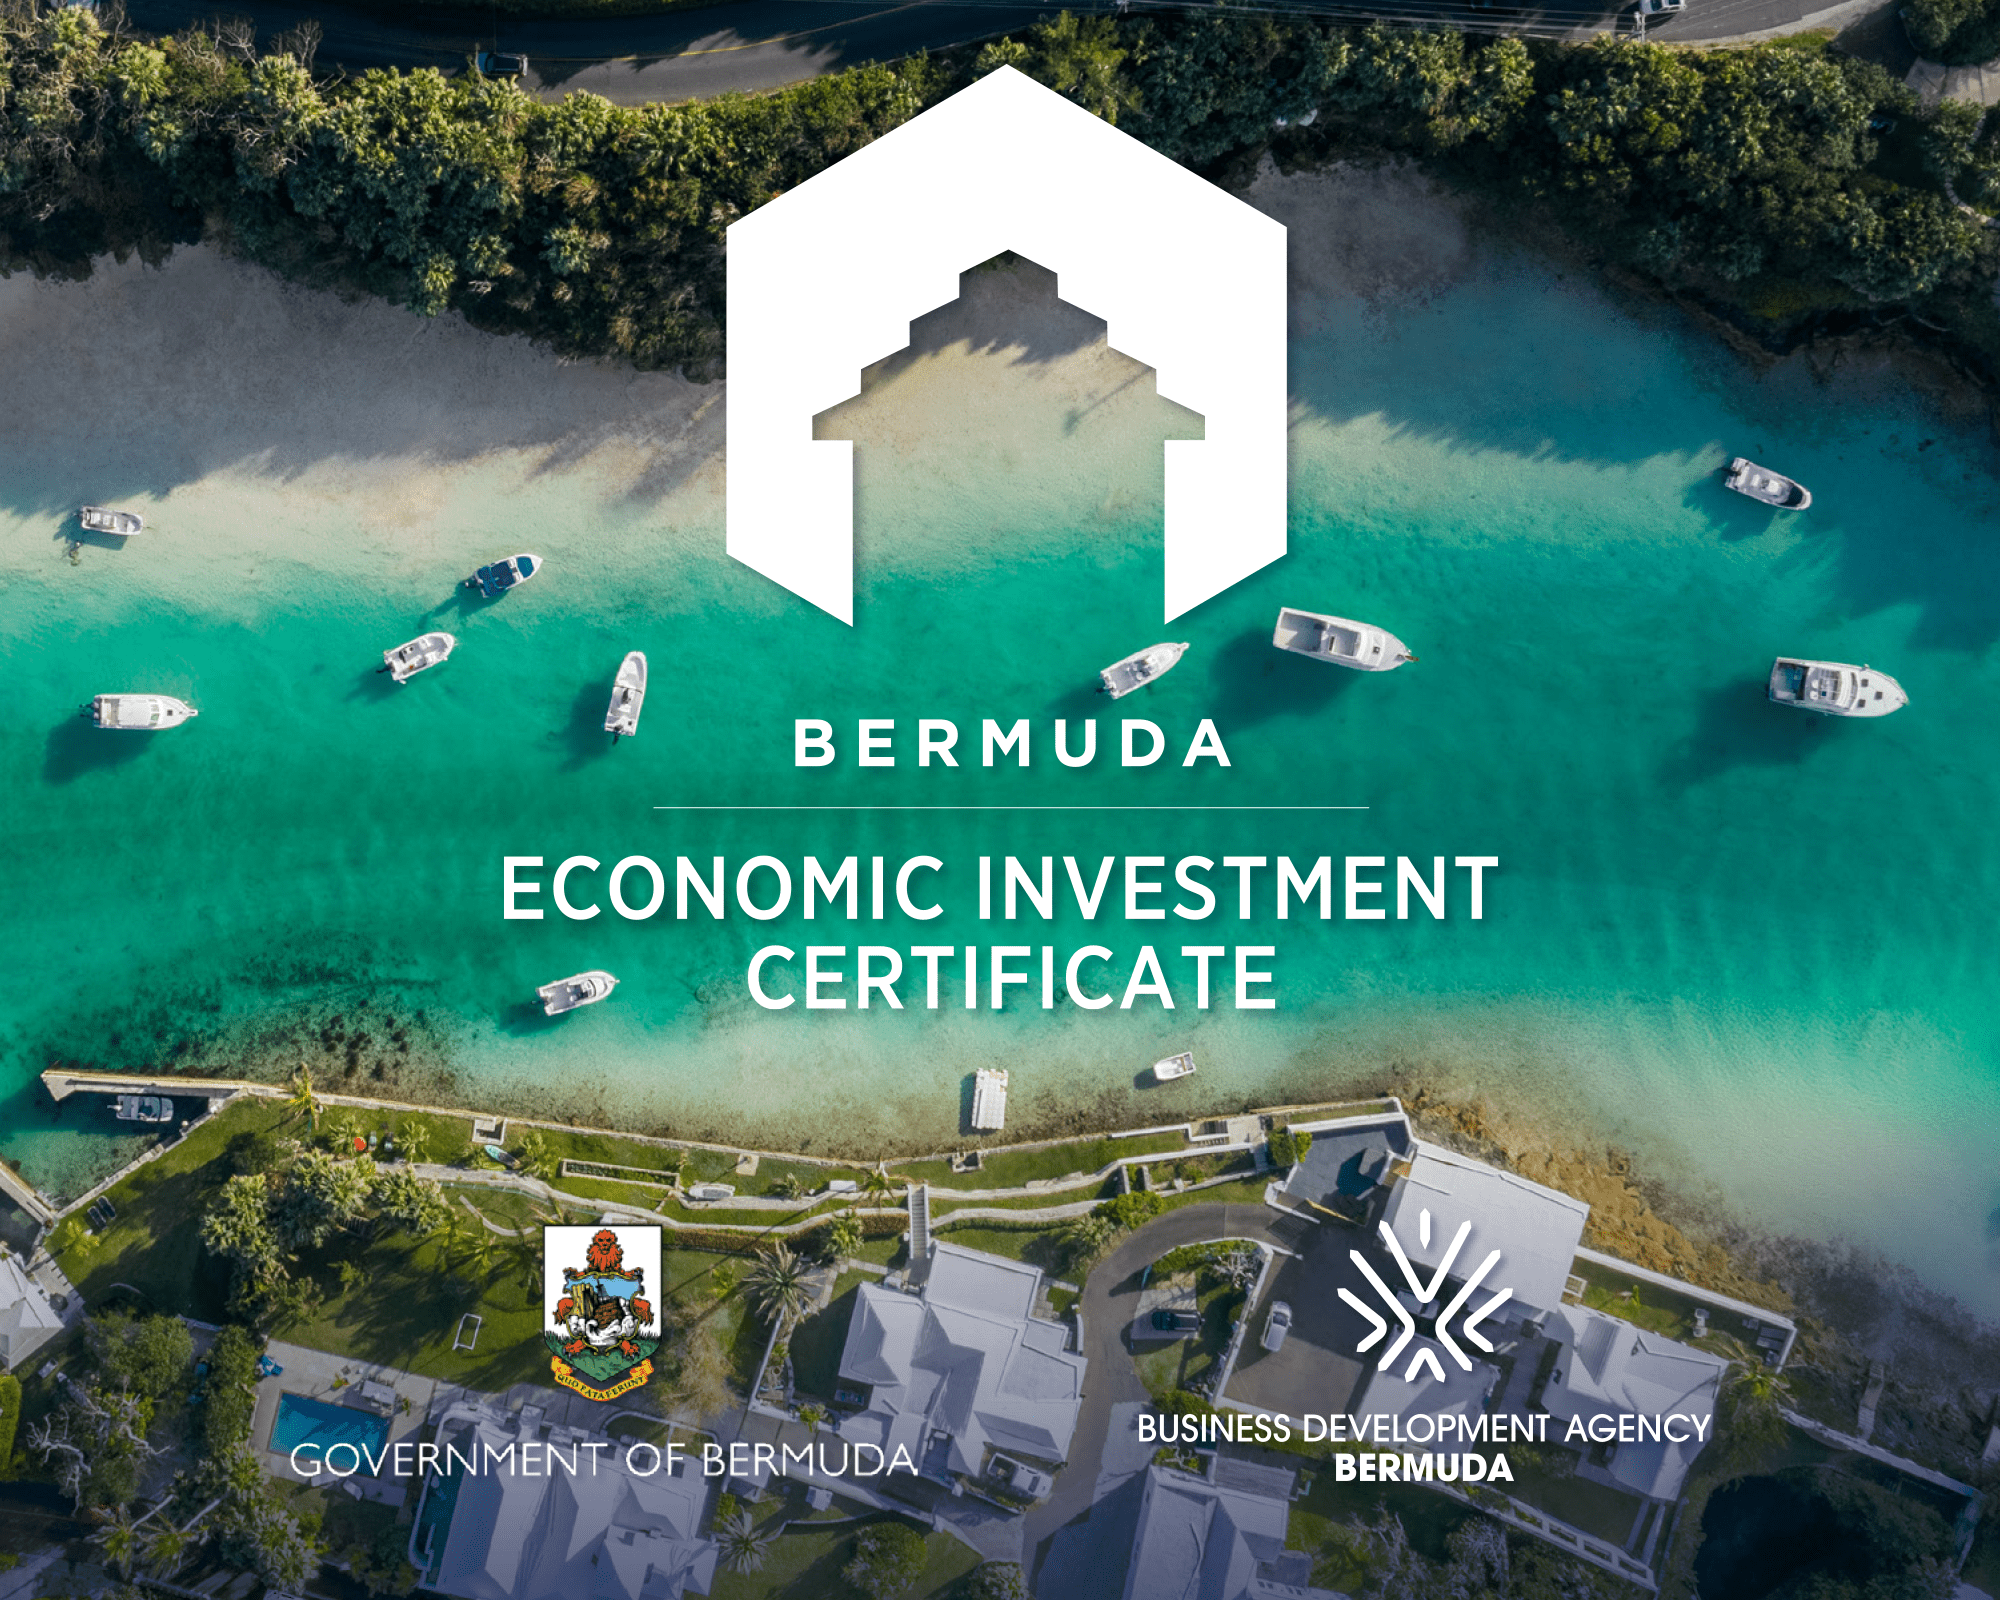 Bermuda’s Economic Investment Certificate